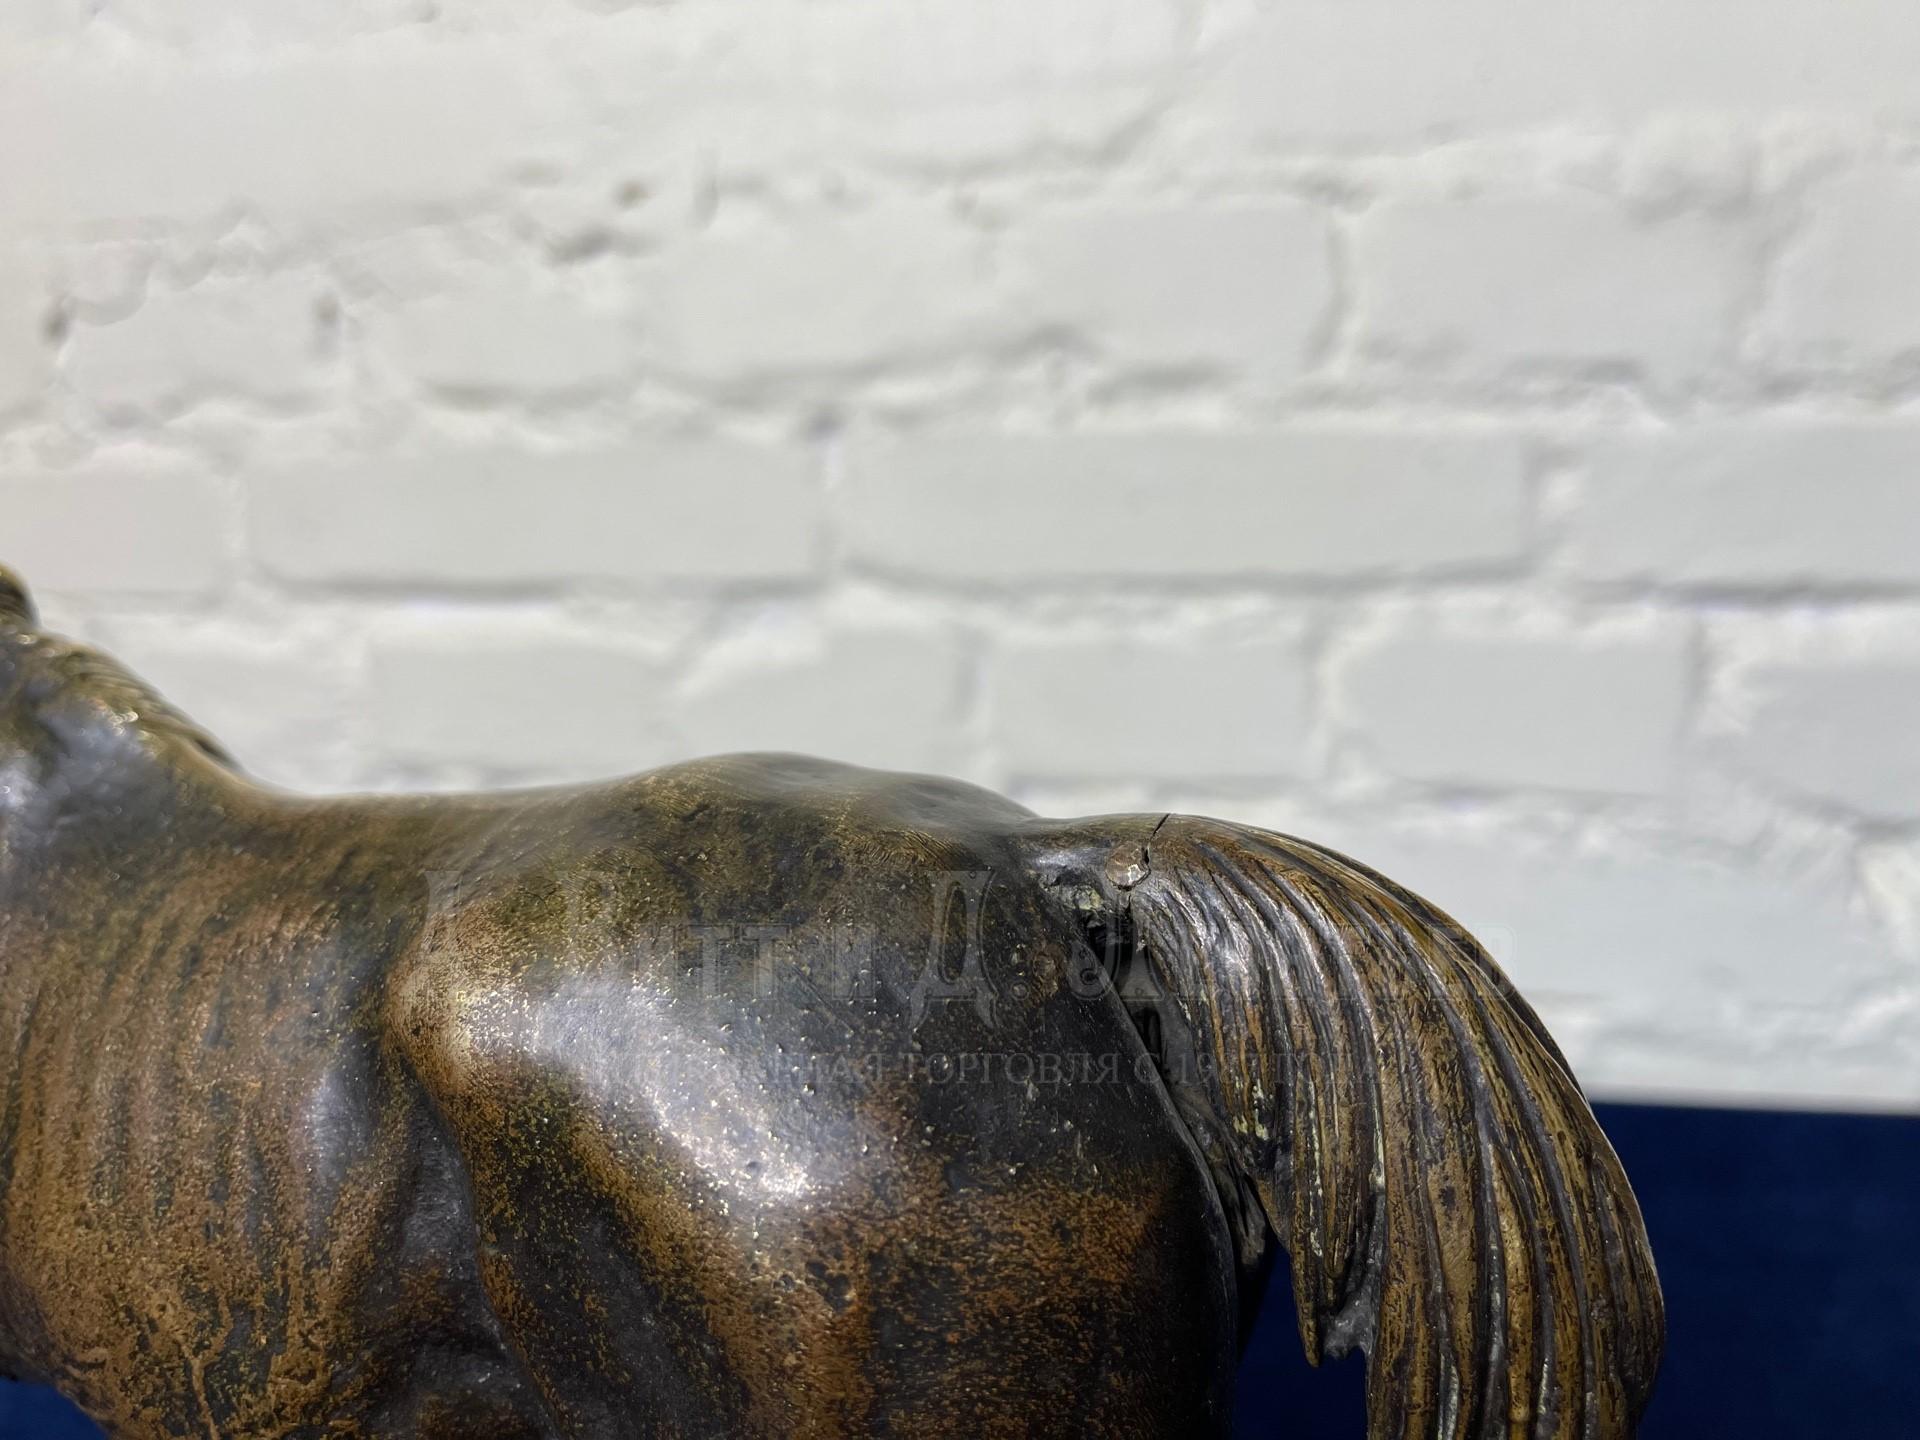 Чистокровная английская лошадь скульптура бронзовая жеребец кобыла